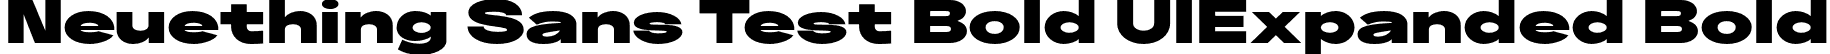 Neuething Sans Test Bold UlExpanded Bold font | NeuethingVariableTest-BlackUltraExpanded.otf